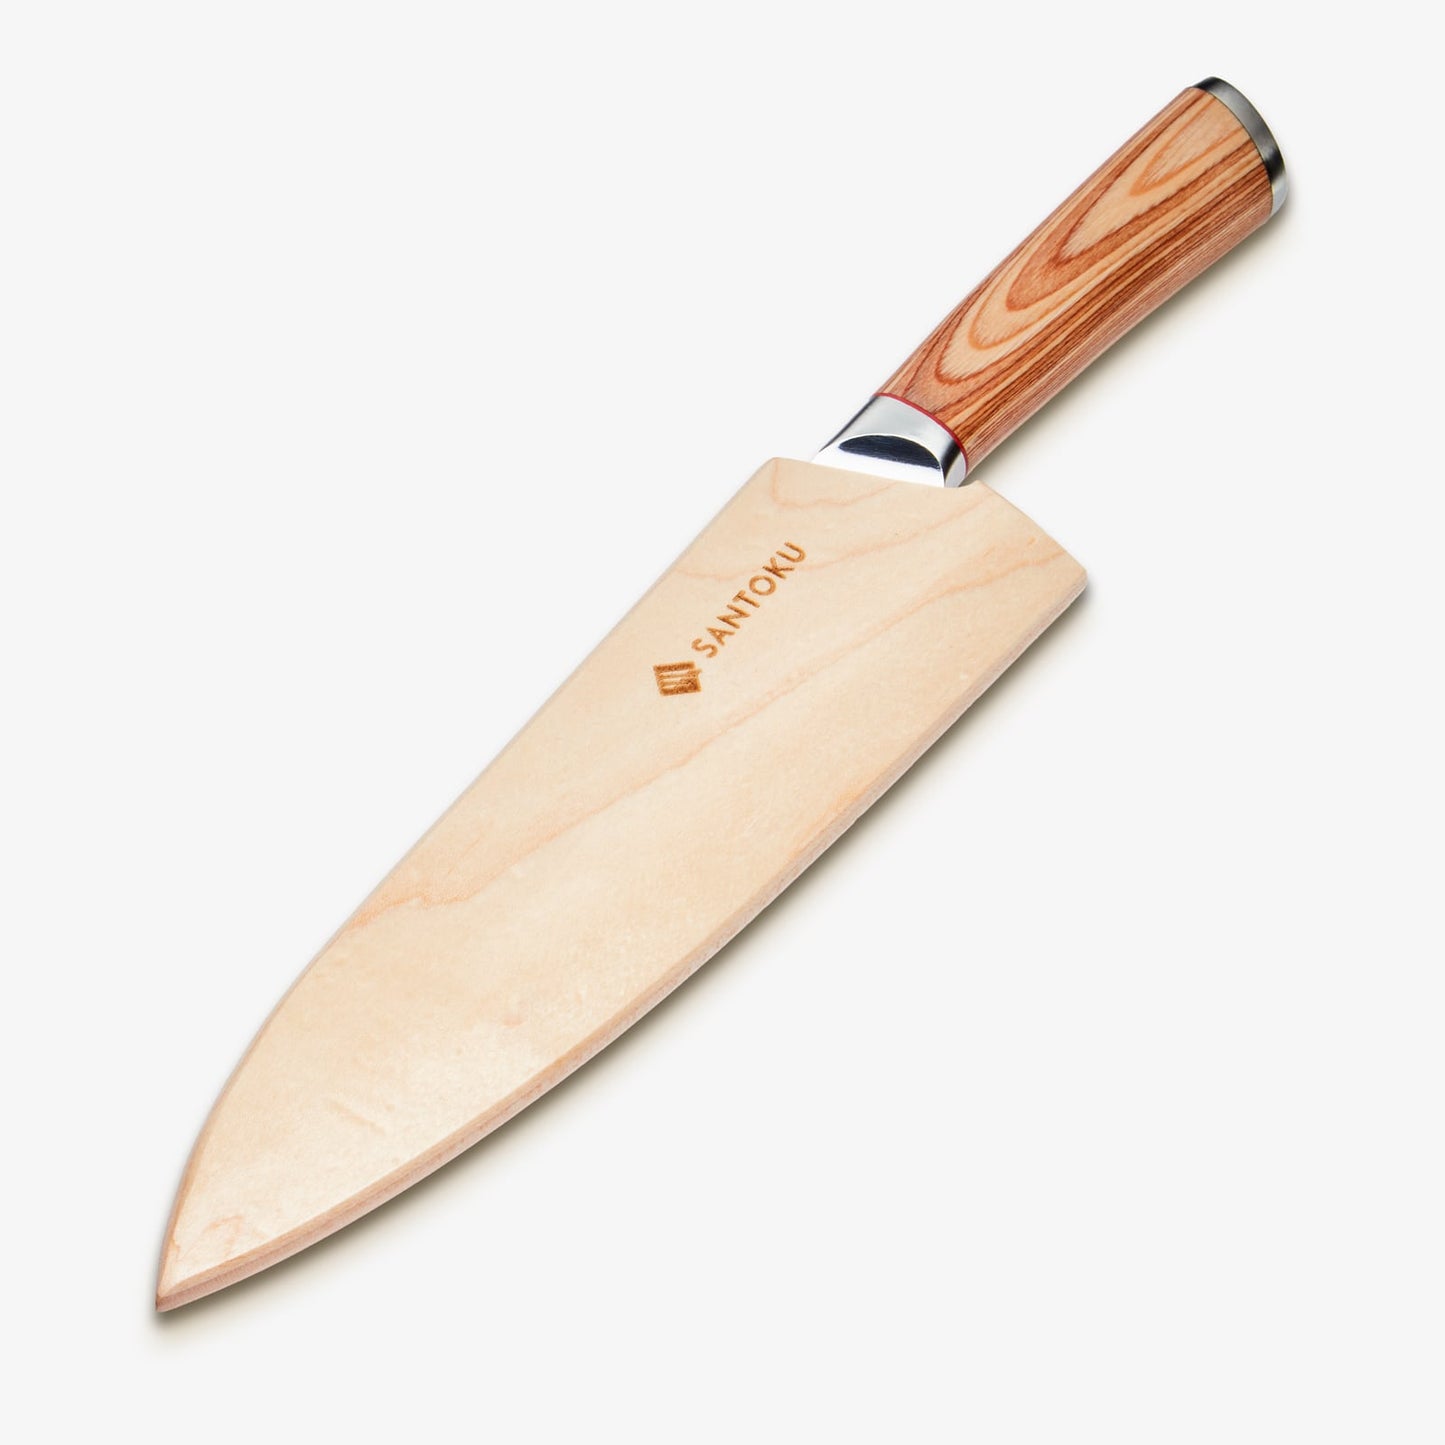 هاروتا (はるた)سكين جيوتو 8 بوصة